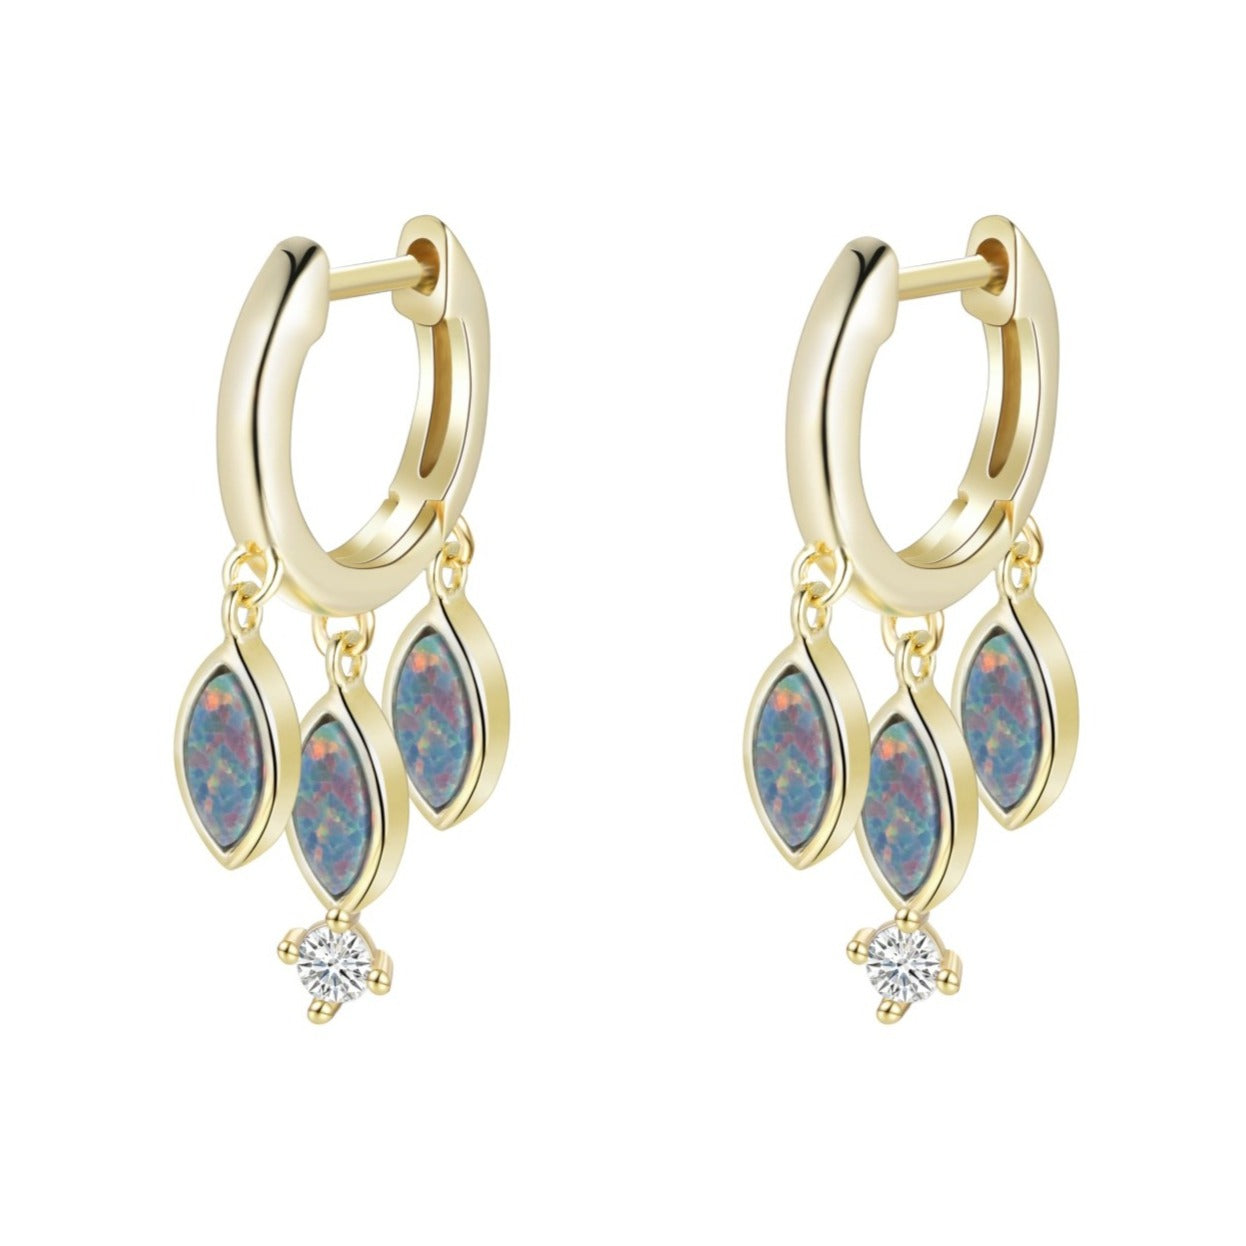 Opal shaker huggie earrings in light green gold